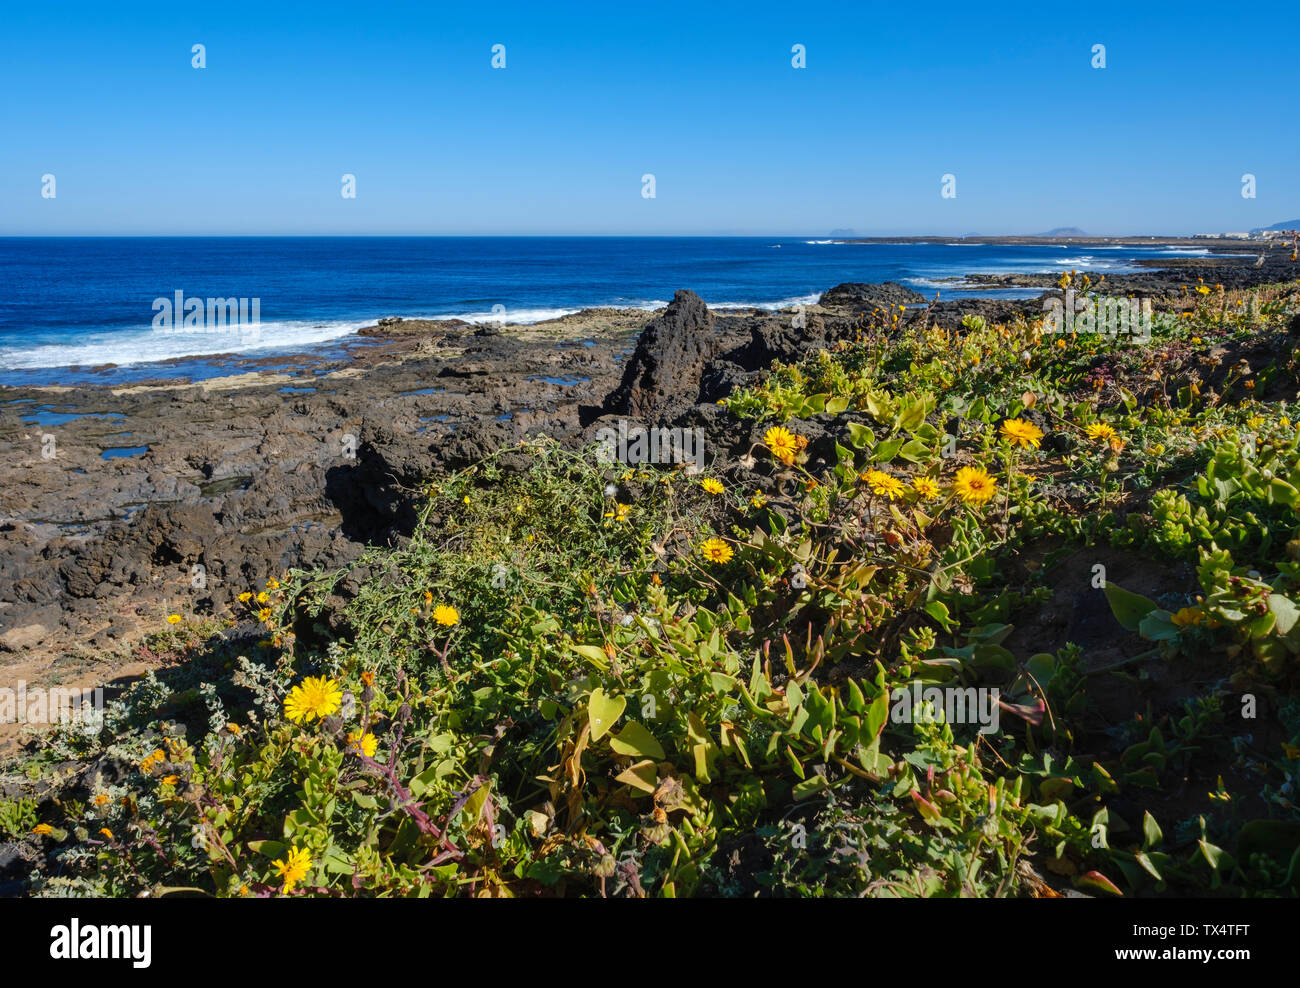 Espagne, Canaries, Lanzarote, Tinajo, fleurs sur la côte rocheuse Banque D'Images